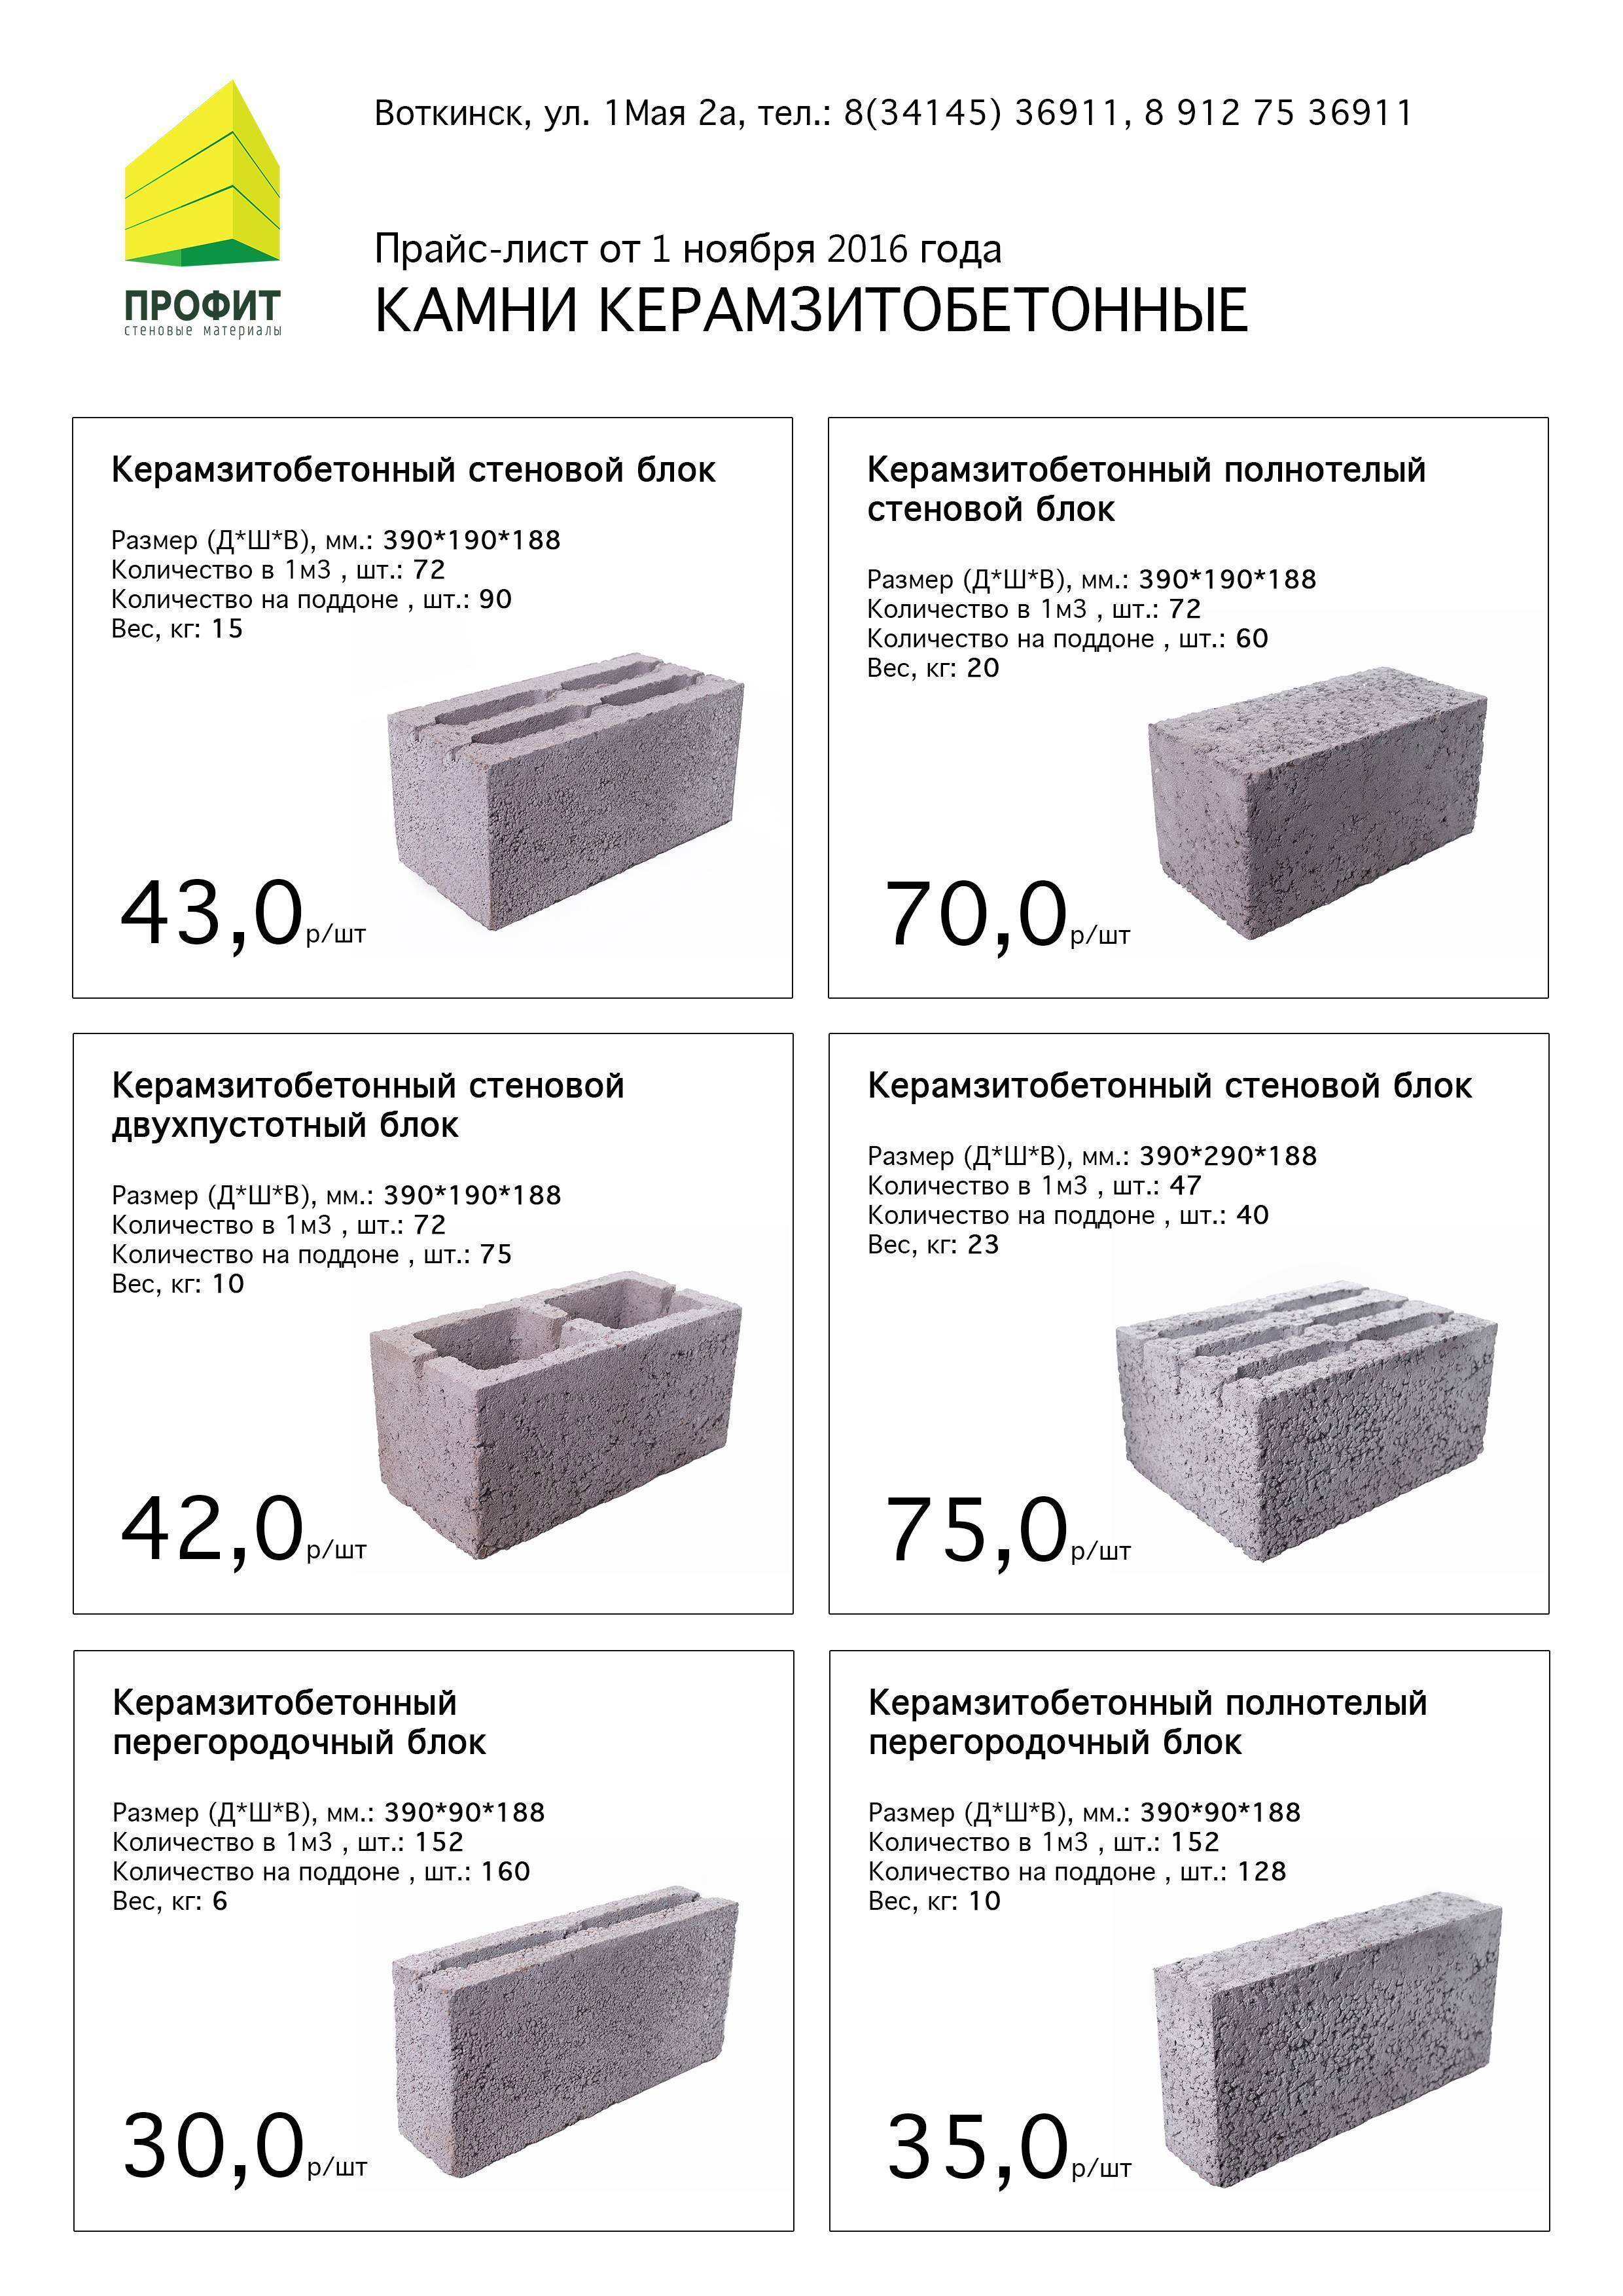 Плюсы и минусы применения керамзитных блоков в строительстве